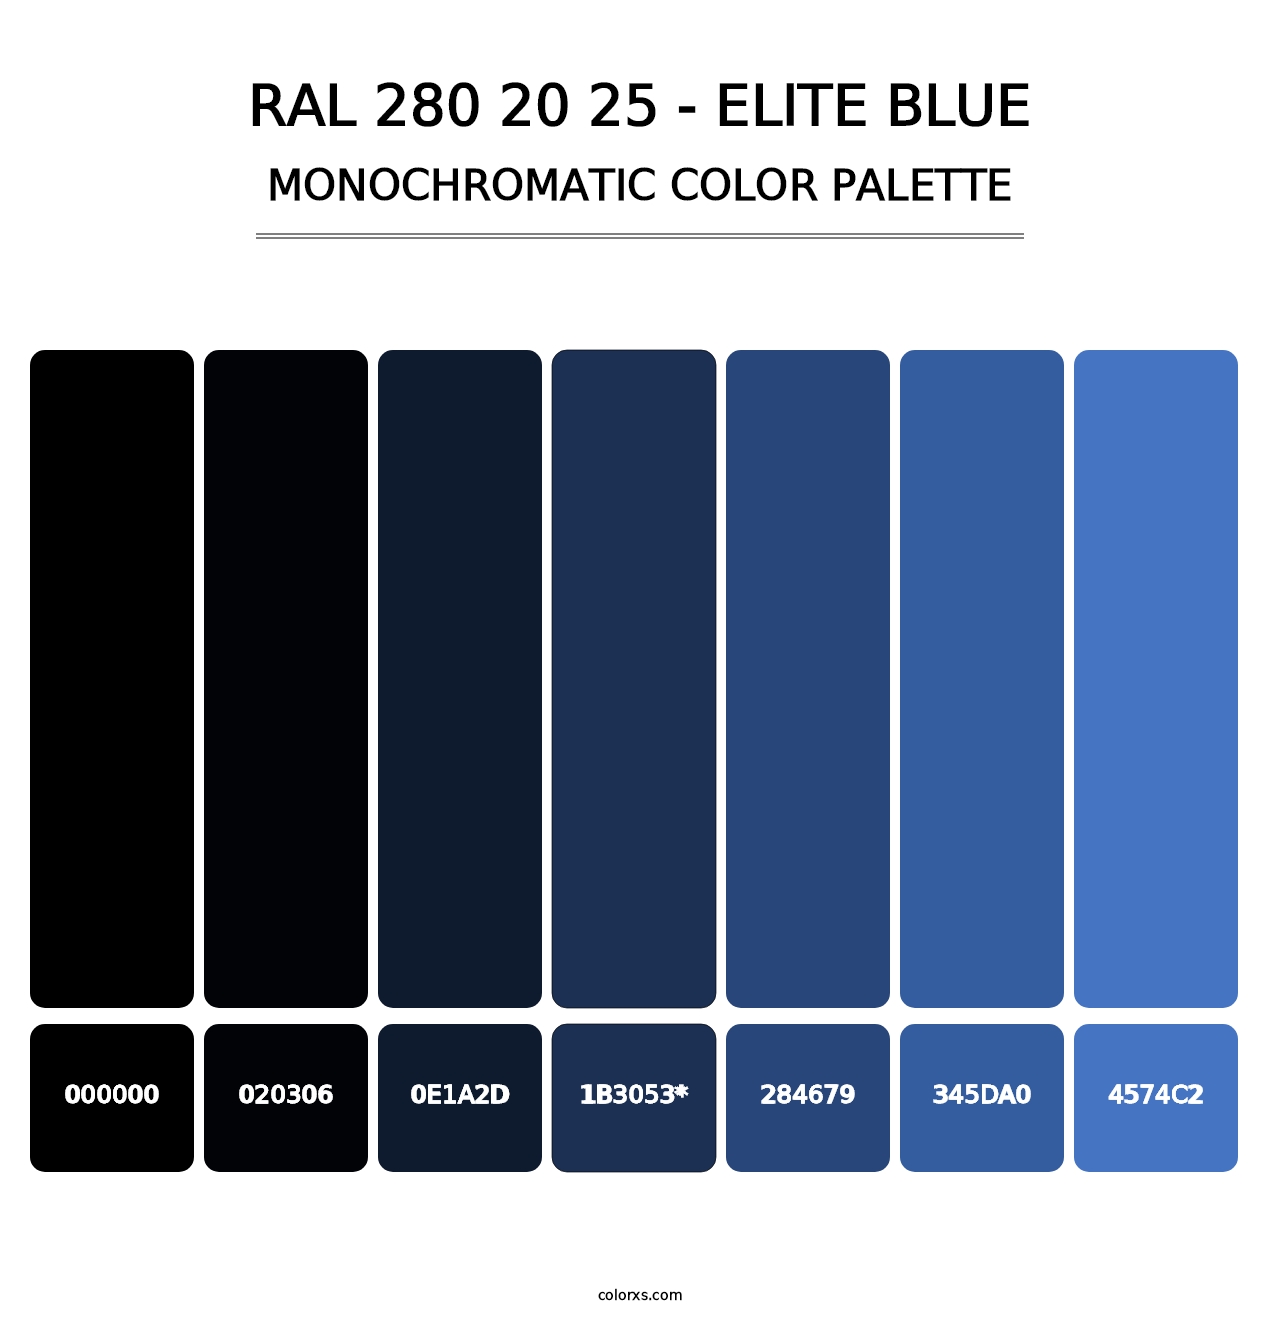 RAL 280 20 25 - Elite Blue - Monochromatic Color Palette